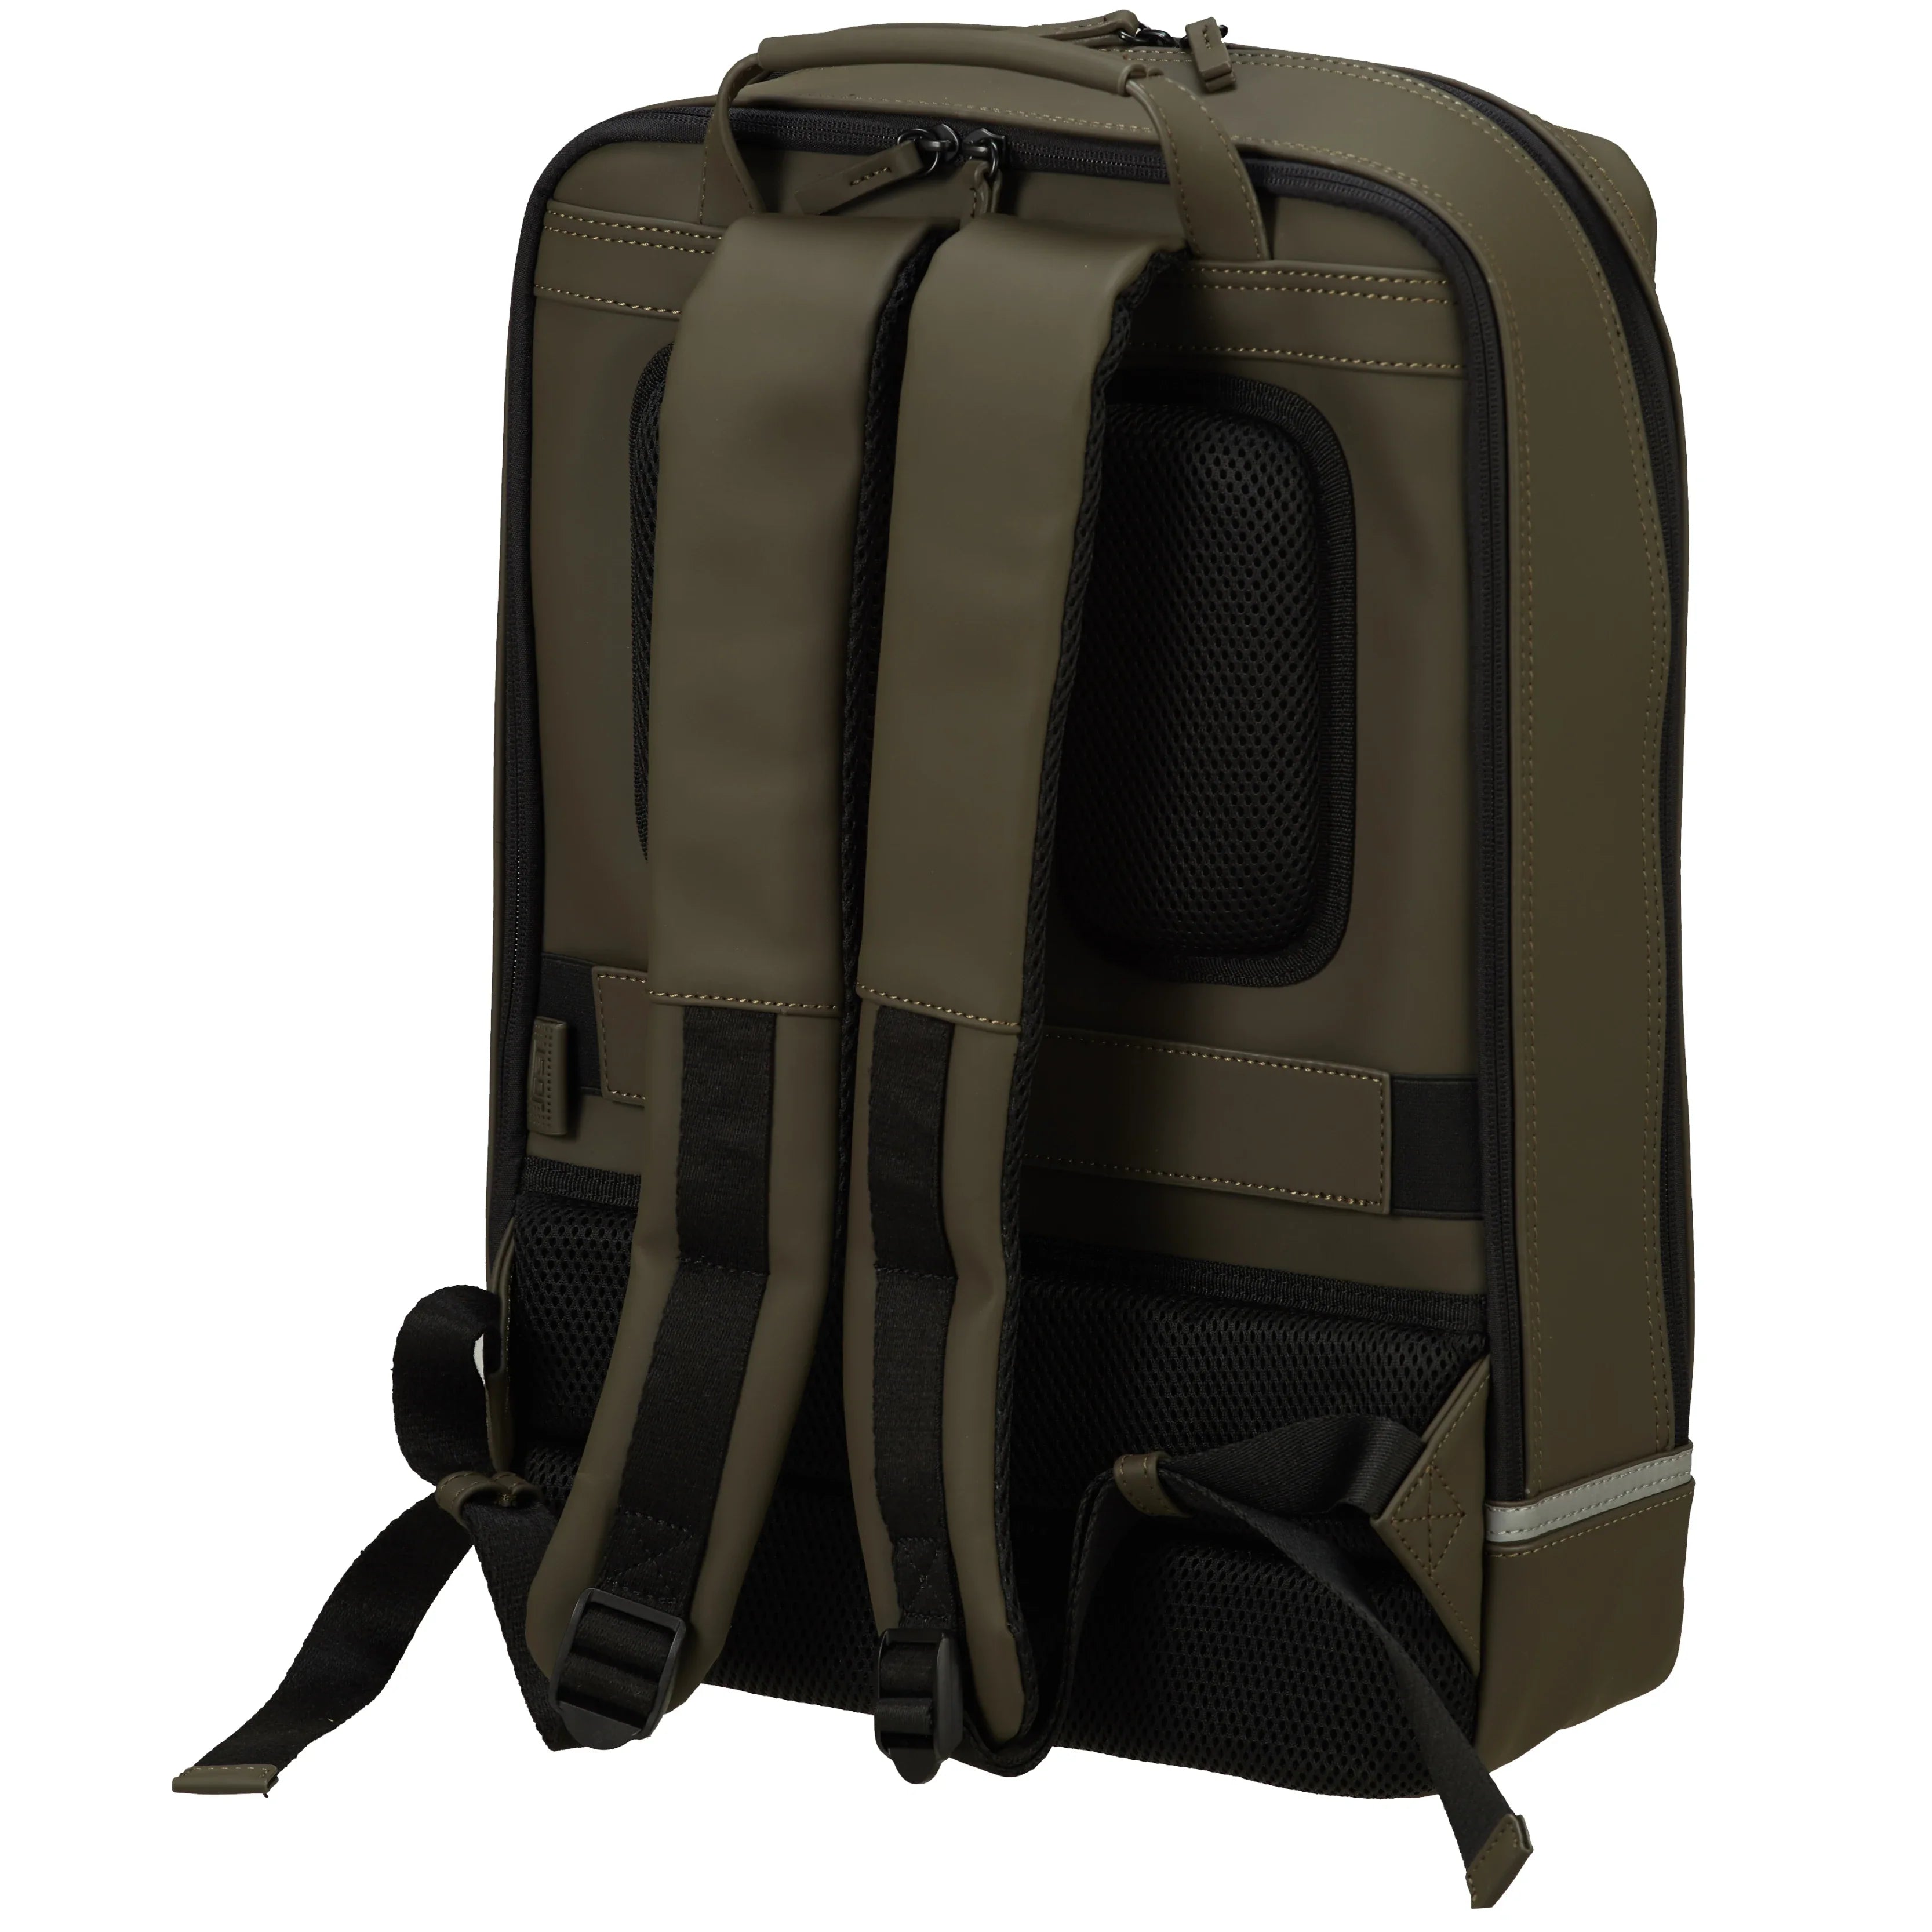 Jost Backpackspecial daypack leisure backpack 44 cm - Olive